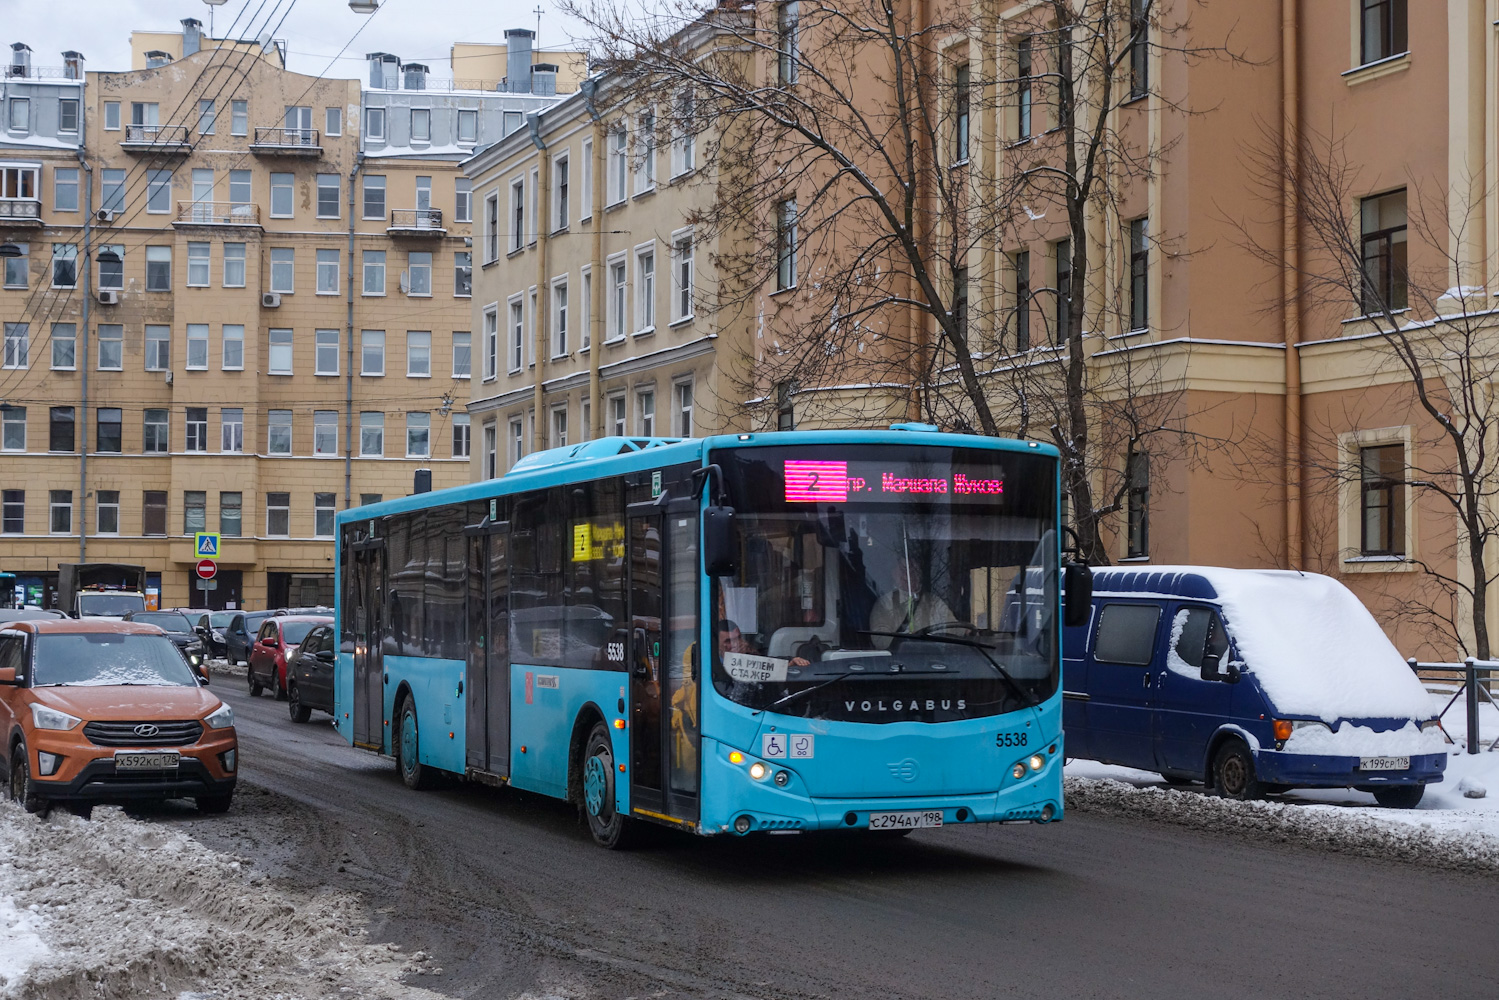 Szentpétervár, Volgabus-5270.02 sz.: 5538